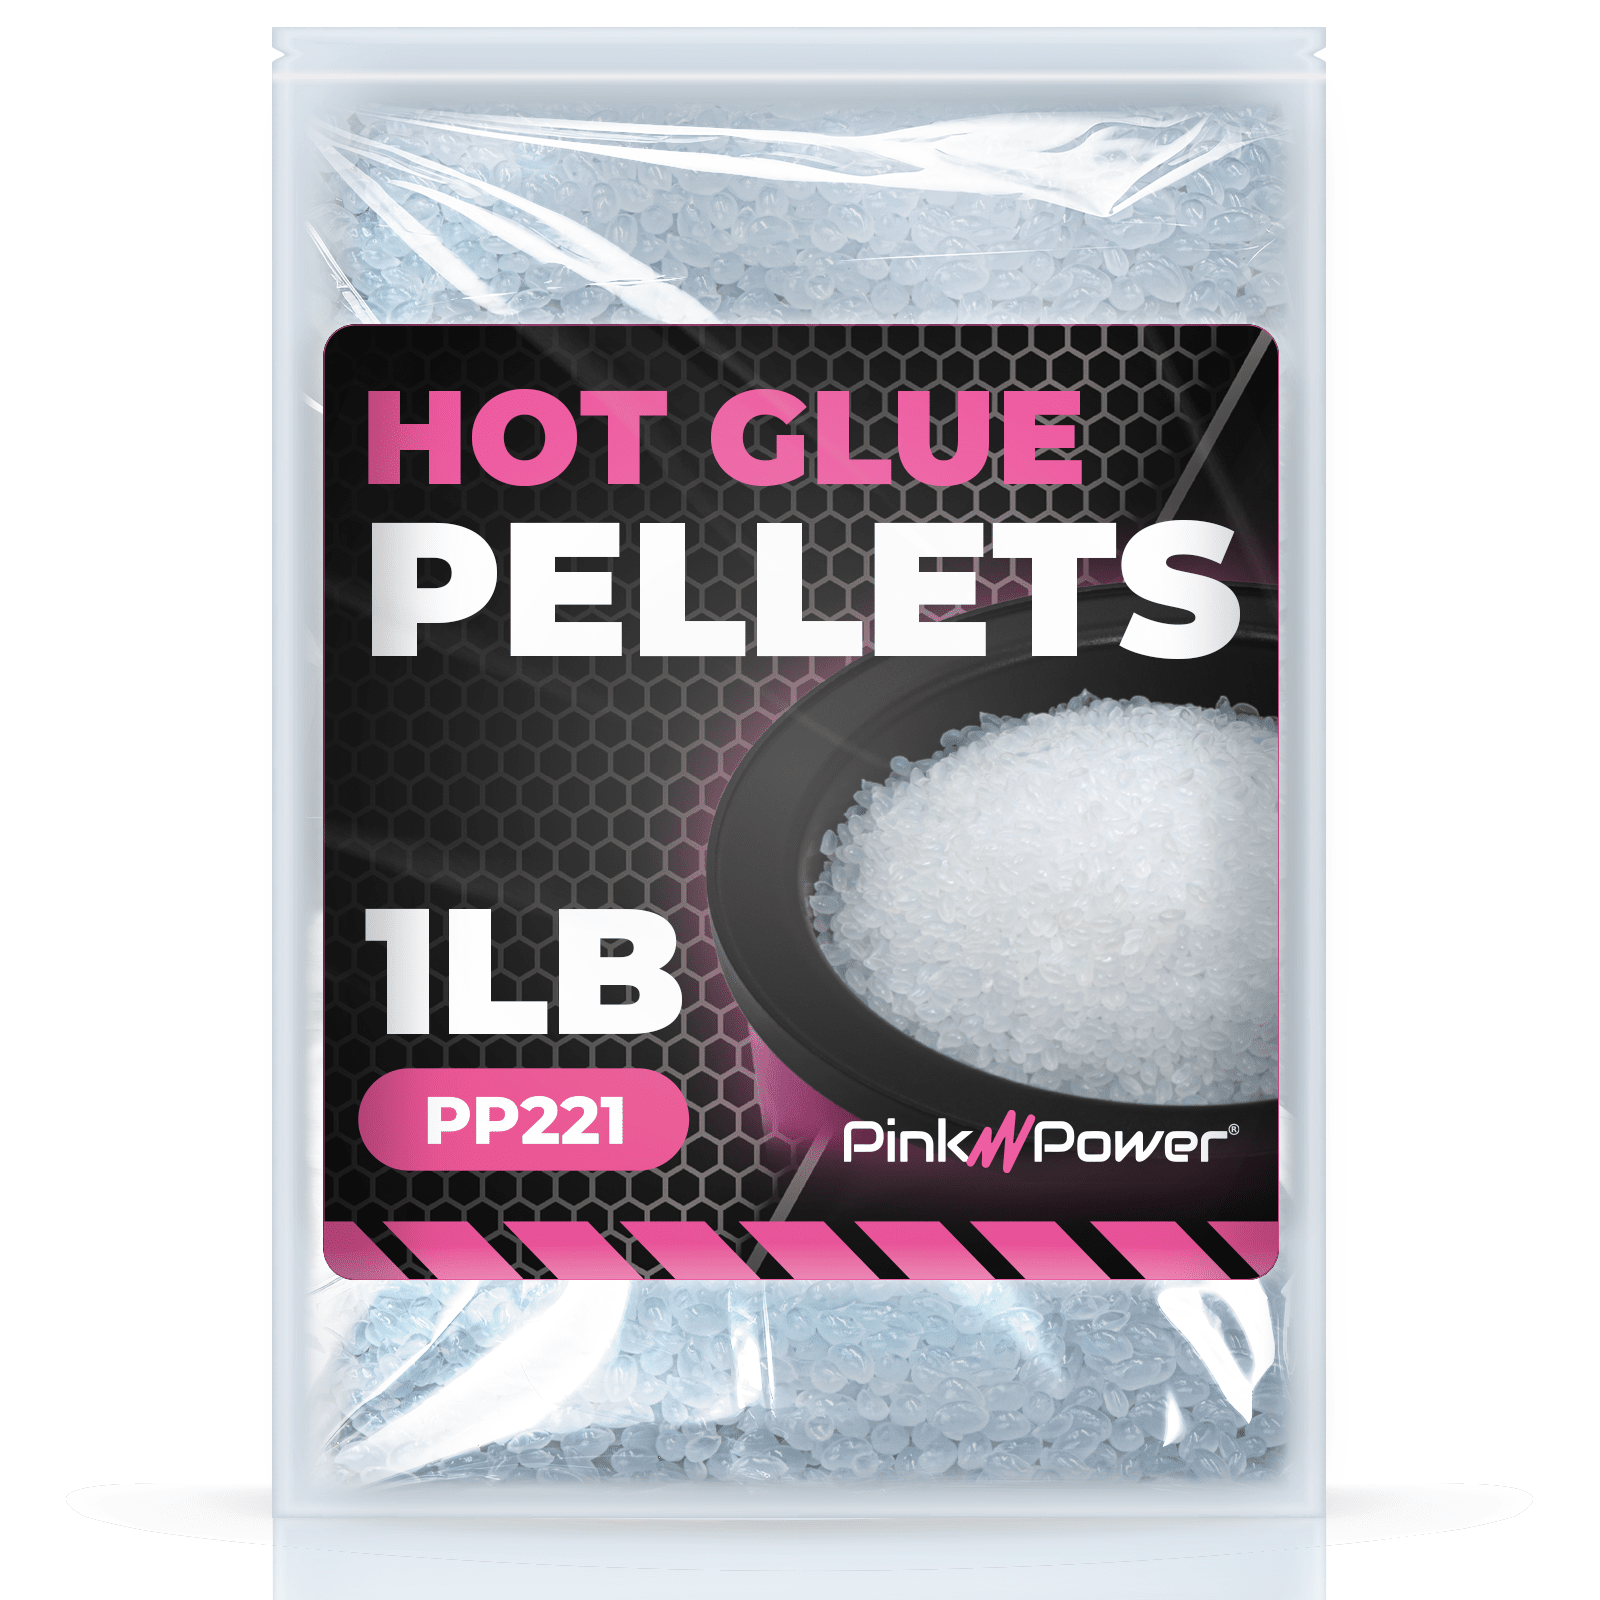 1lb Hot Glue Pellets for PP220 Hot Glue Pot